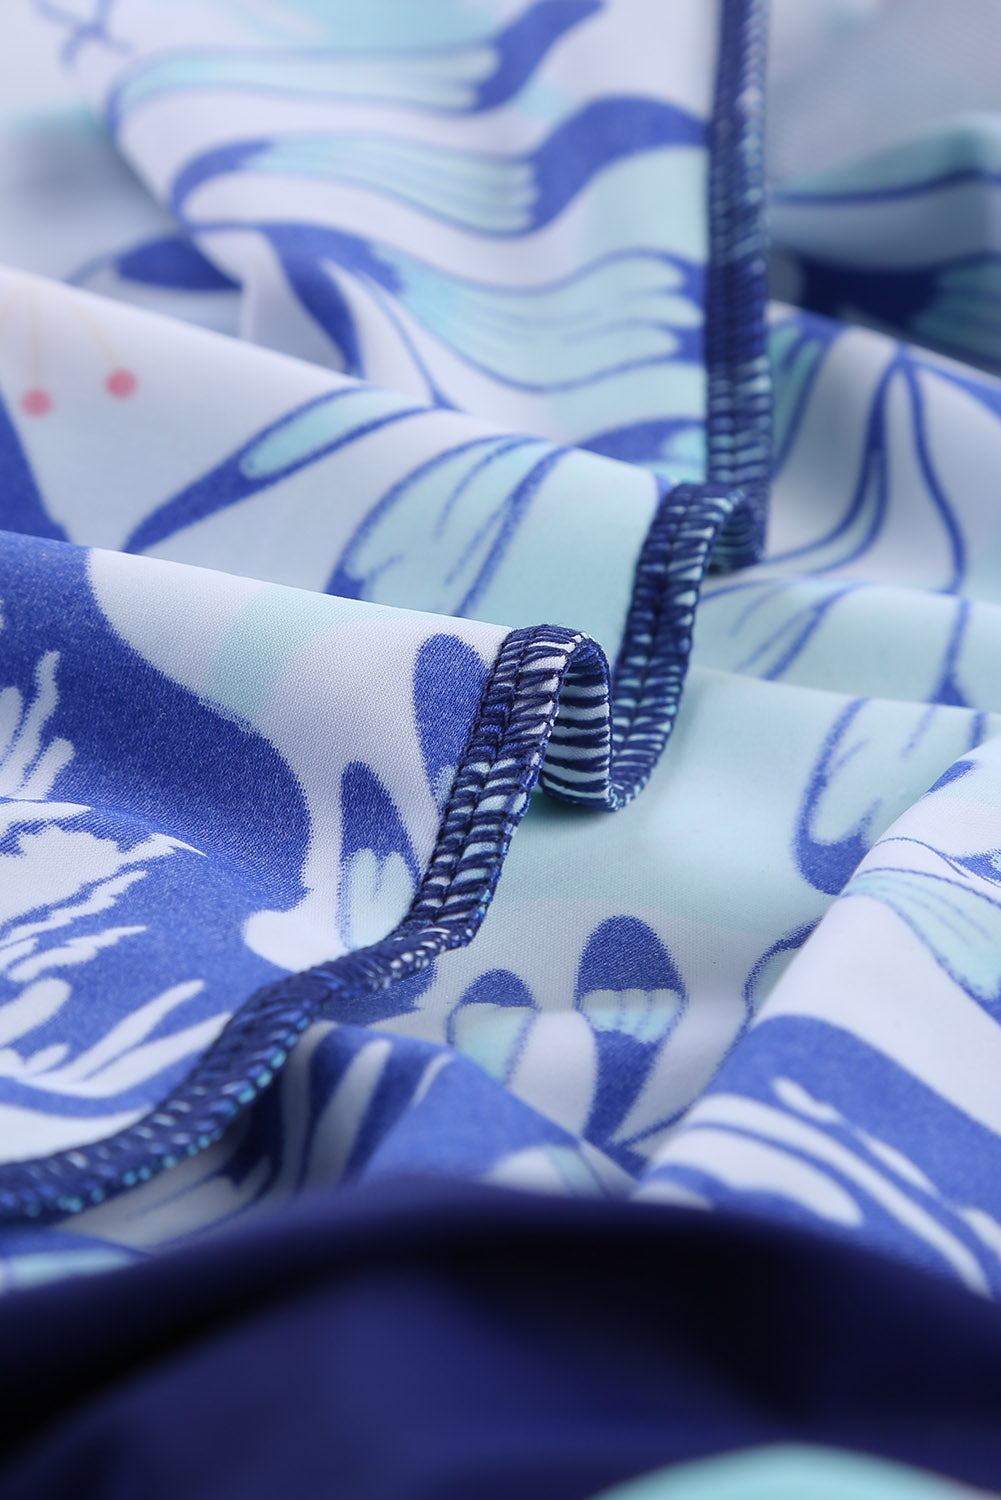 Leopard Print Criss Cross Hollow-out Tankini Swimwear